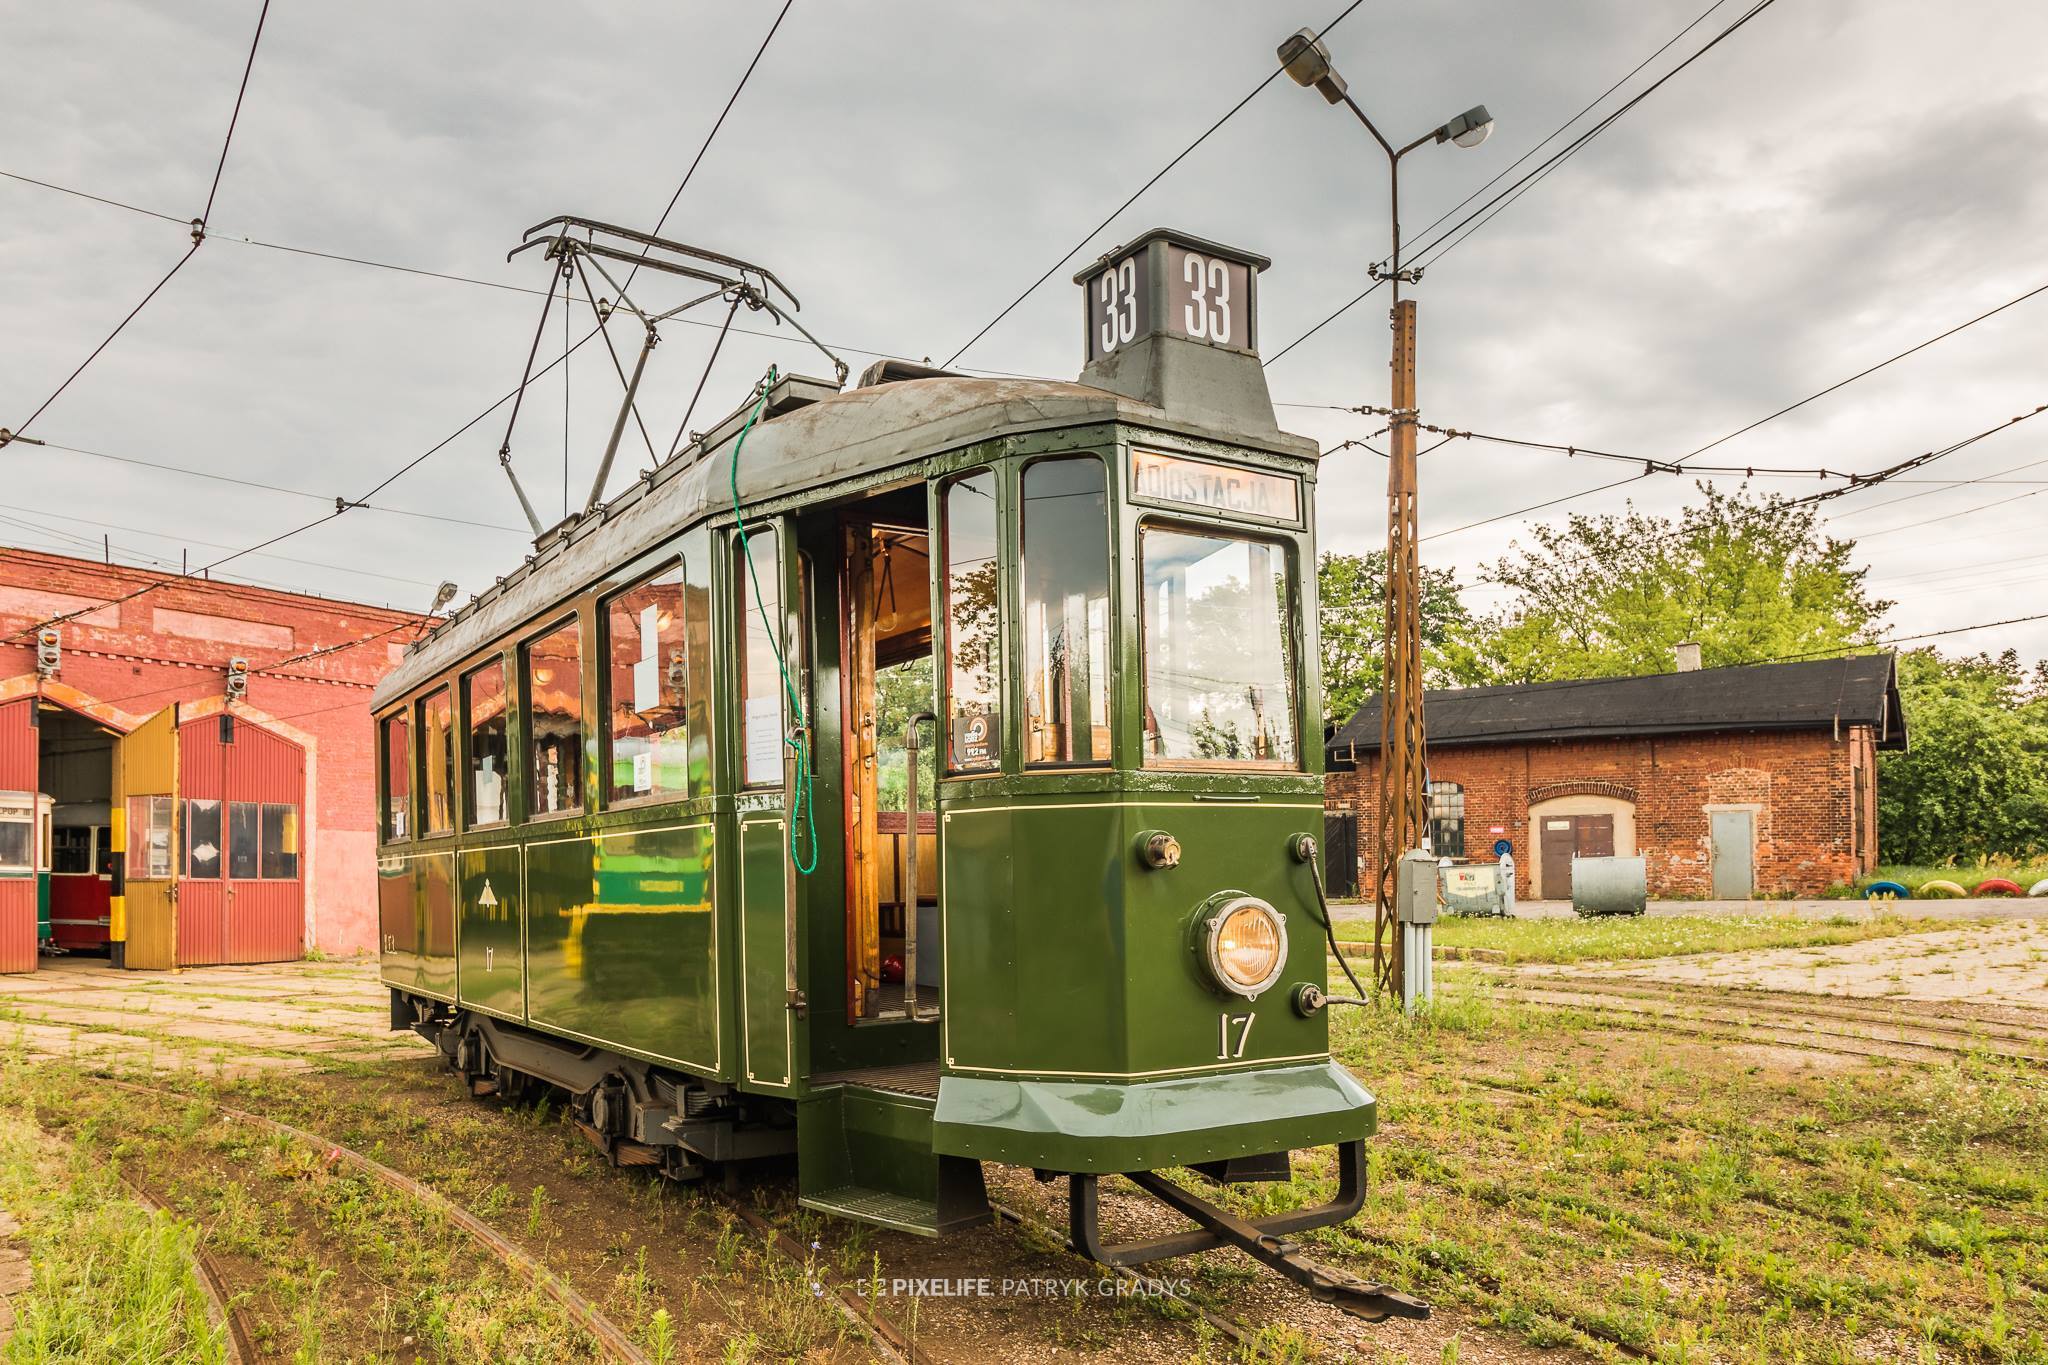 Bezpłatne wycieczki zabytkowym tramwajem Sanok